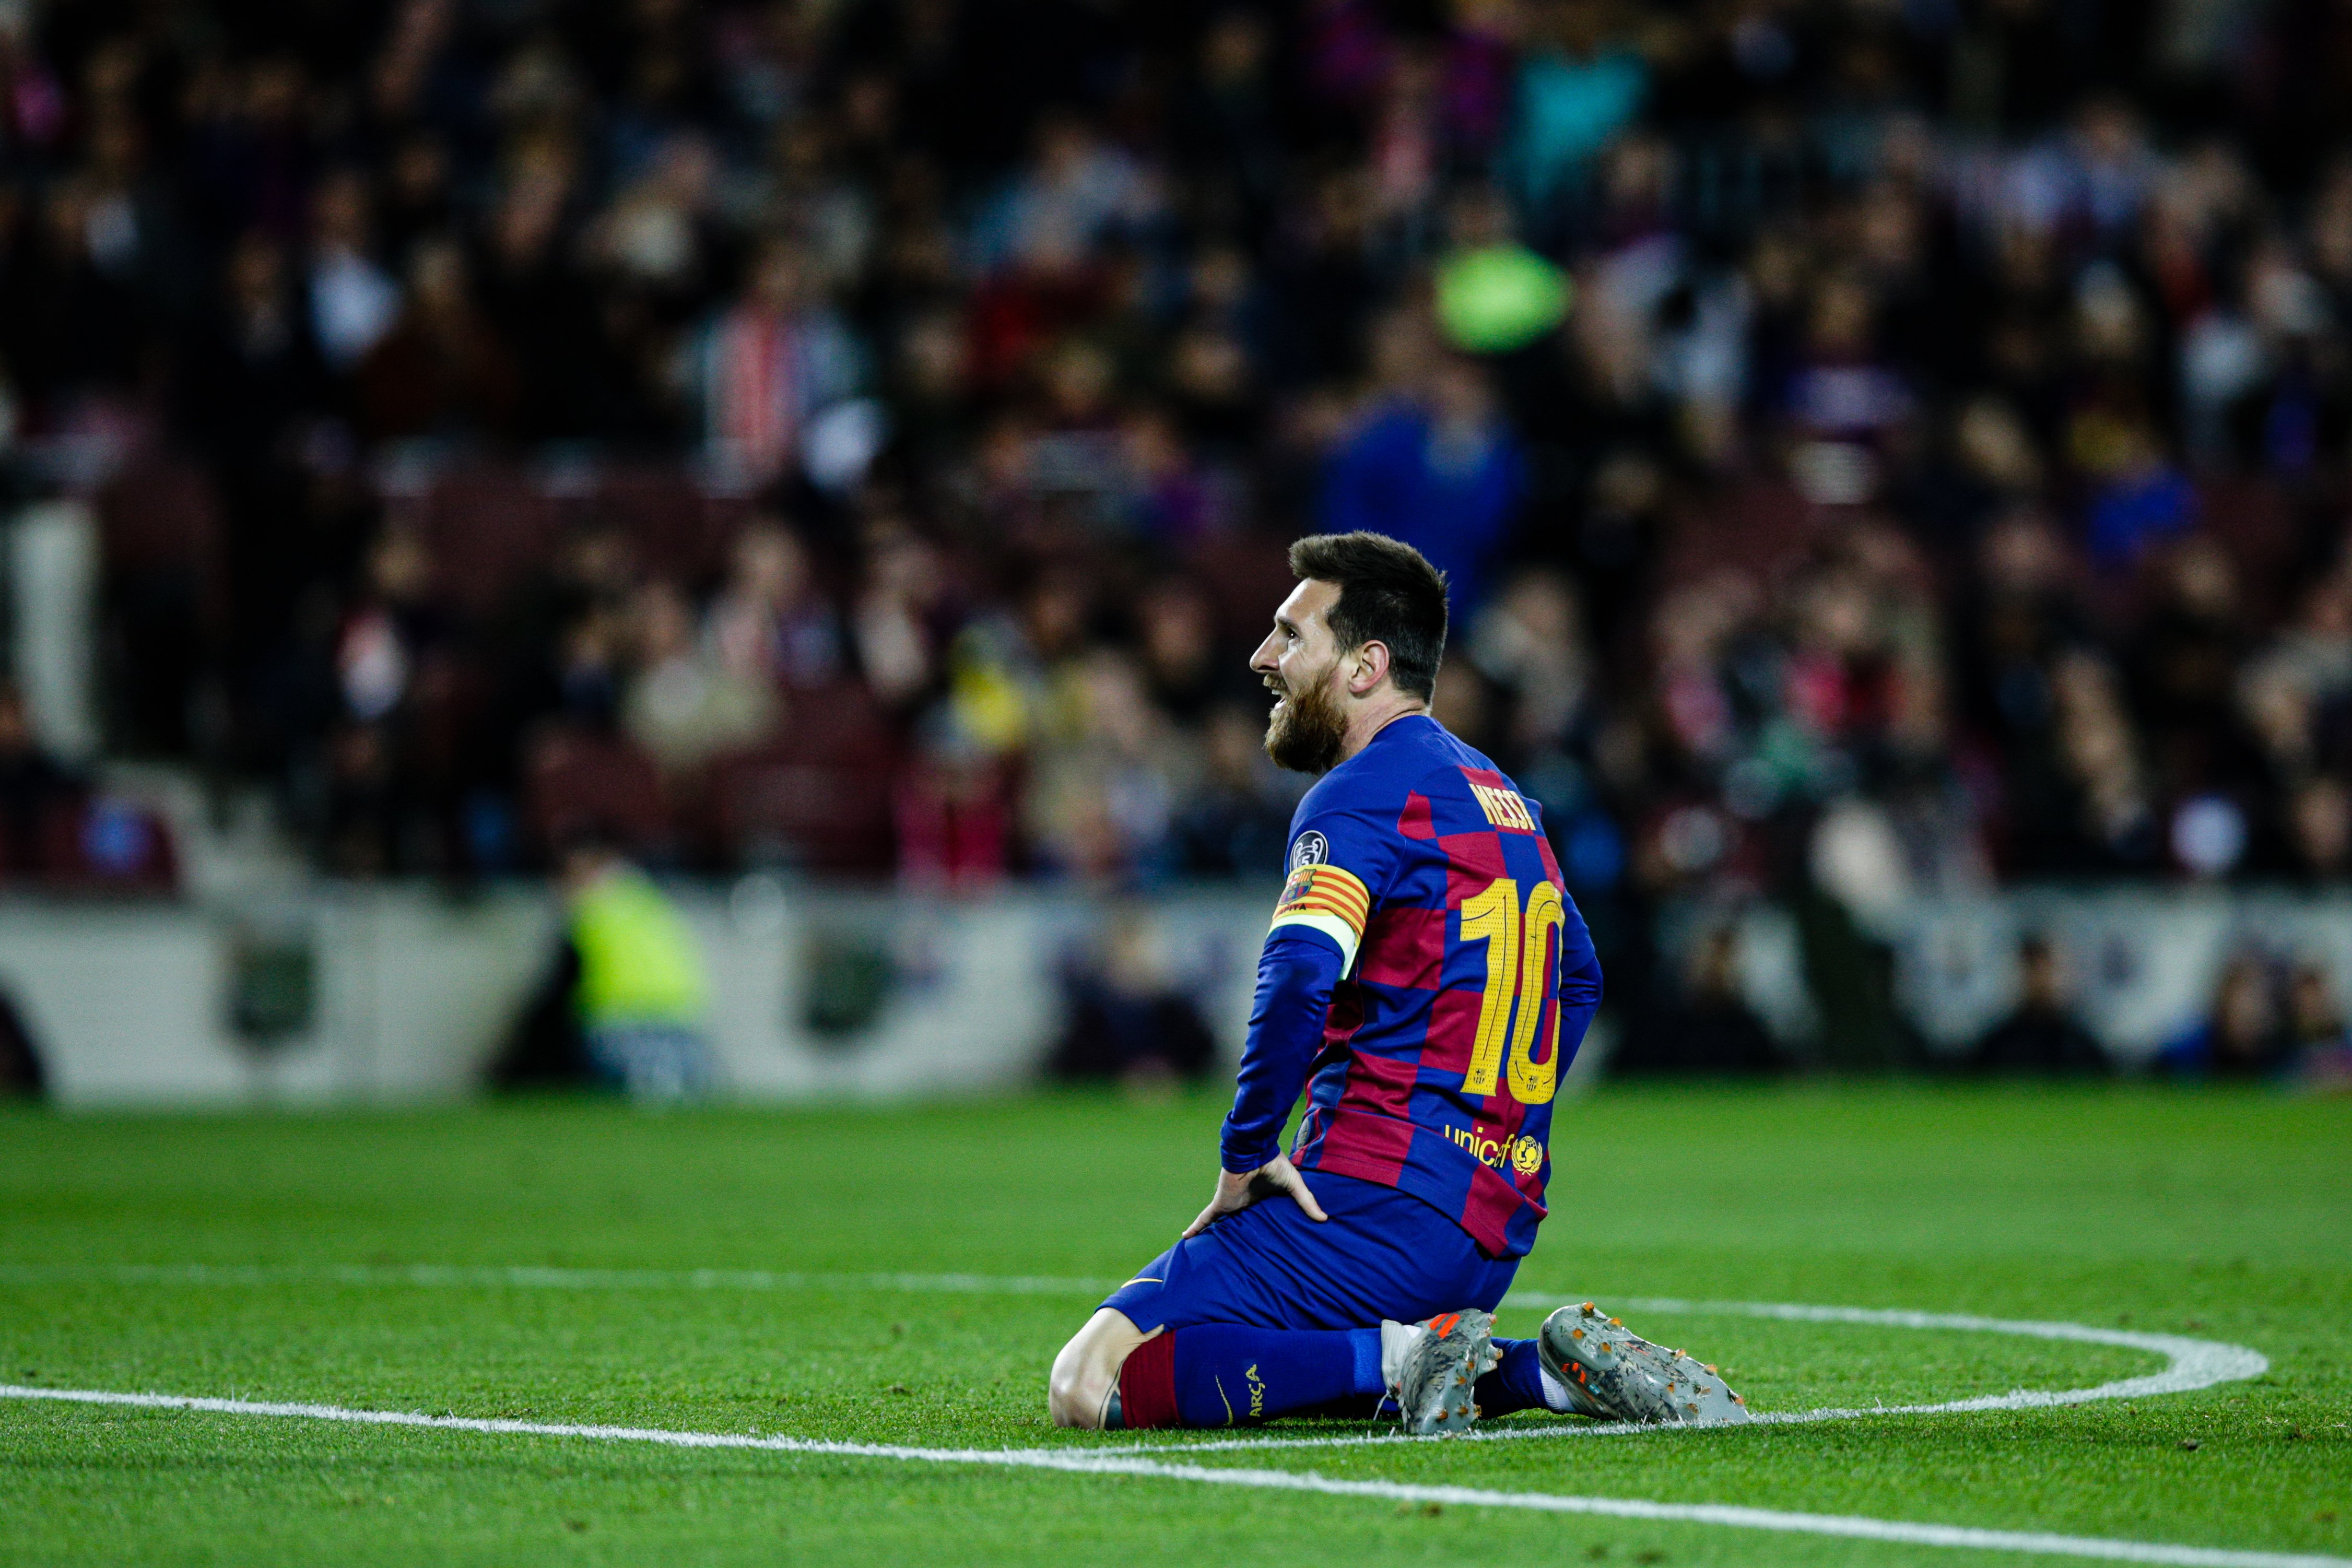 El Barça recorrerà la targeta groga de Messi contra el Celta